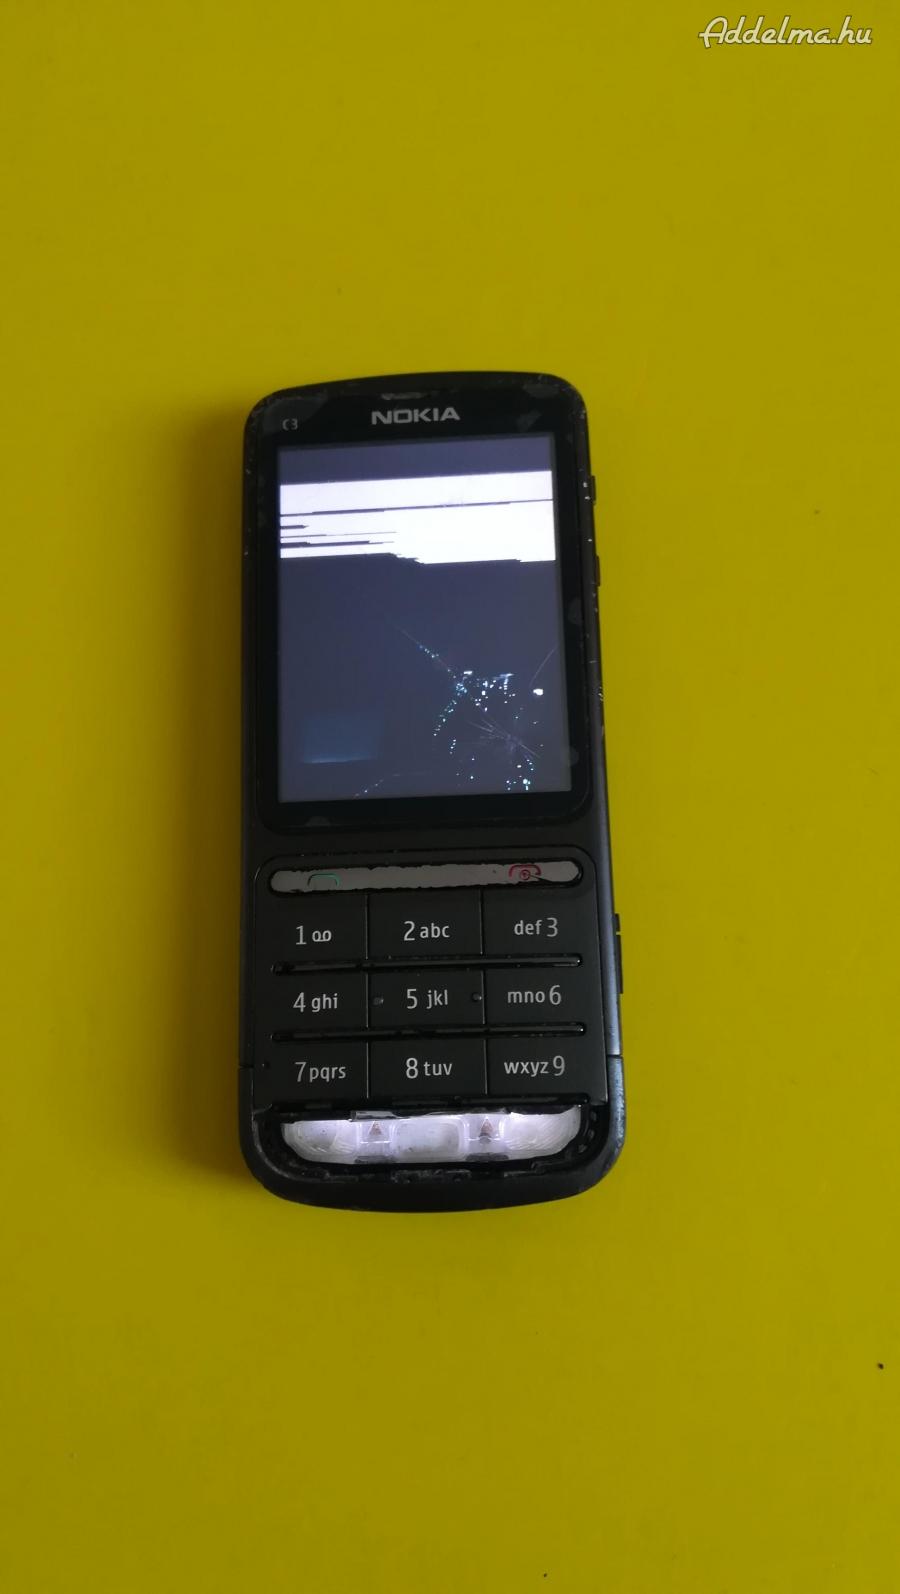 Nokia  c3-01 mobil eladó törött kijelzős 